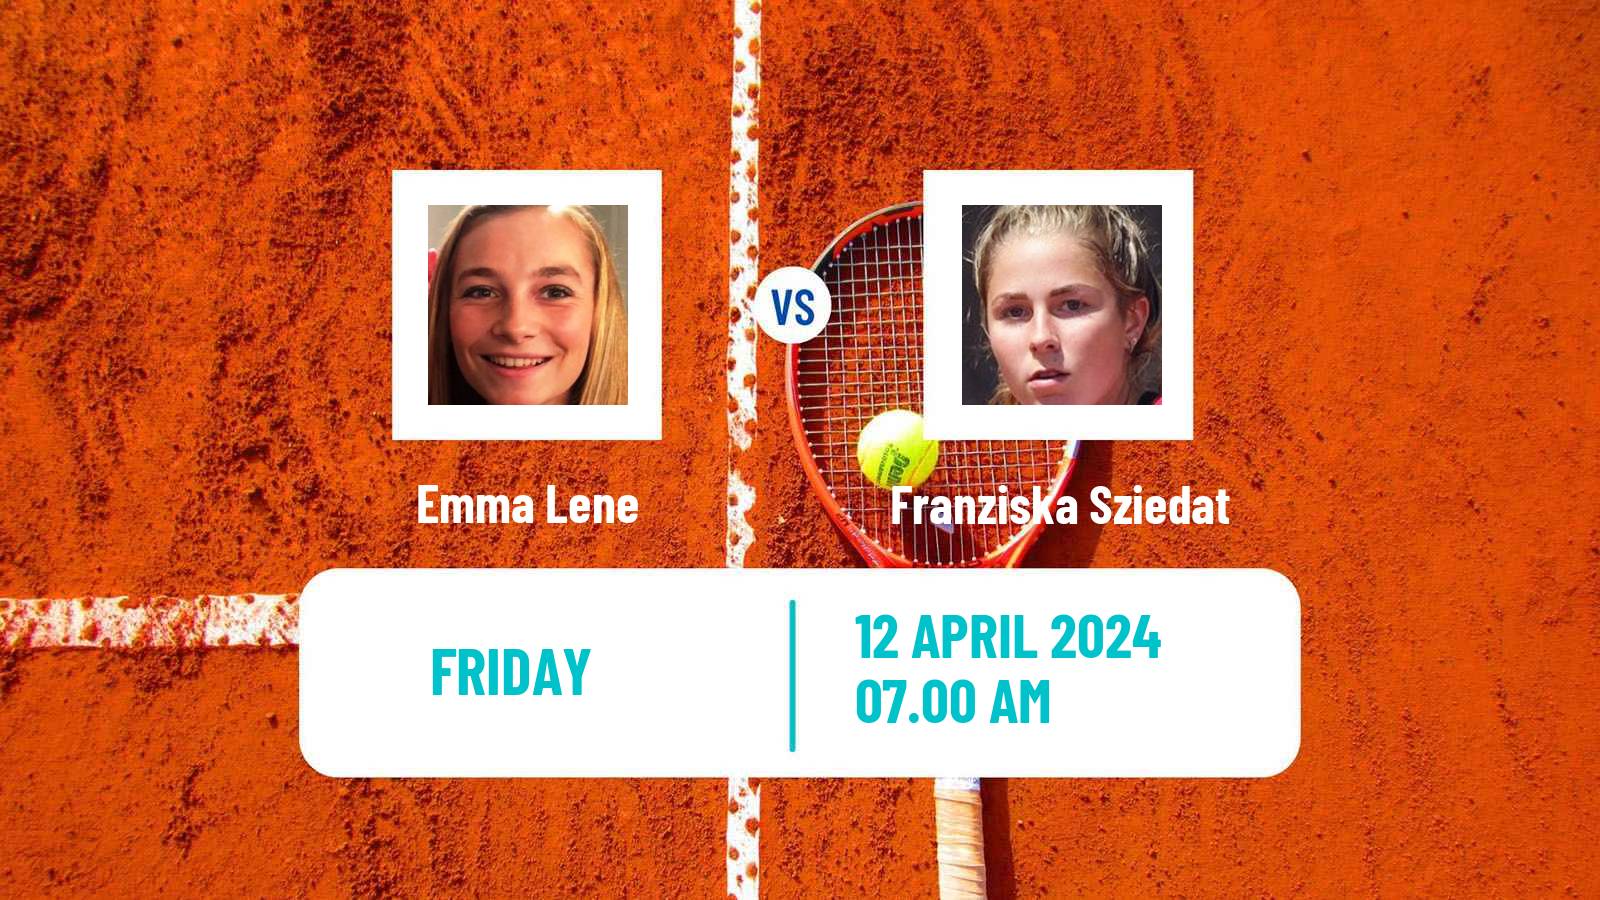 Tennis ITF W35 Hammamet 4 Women Emma Lene - Franziska Sziedat